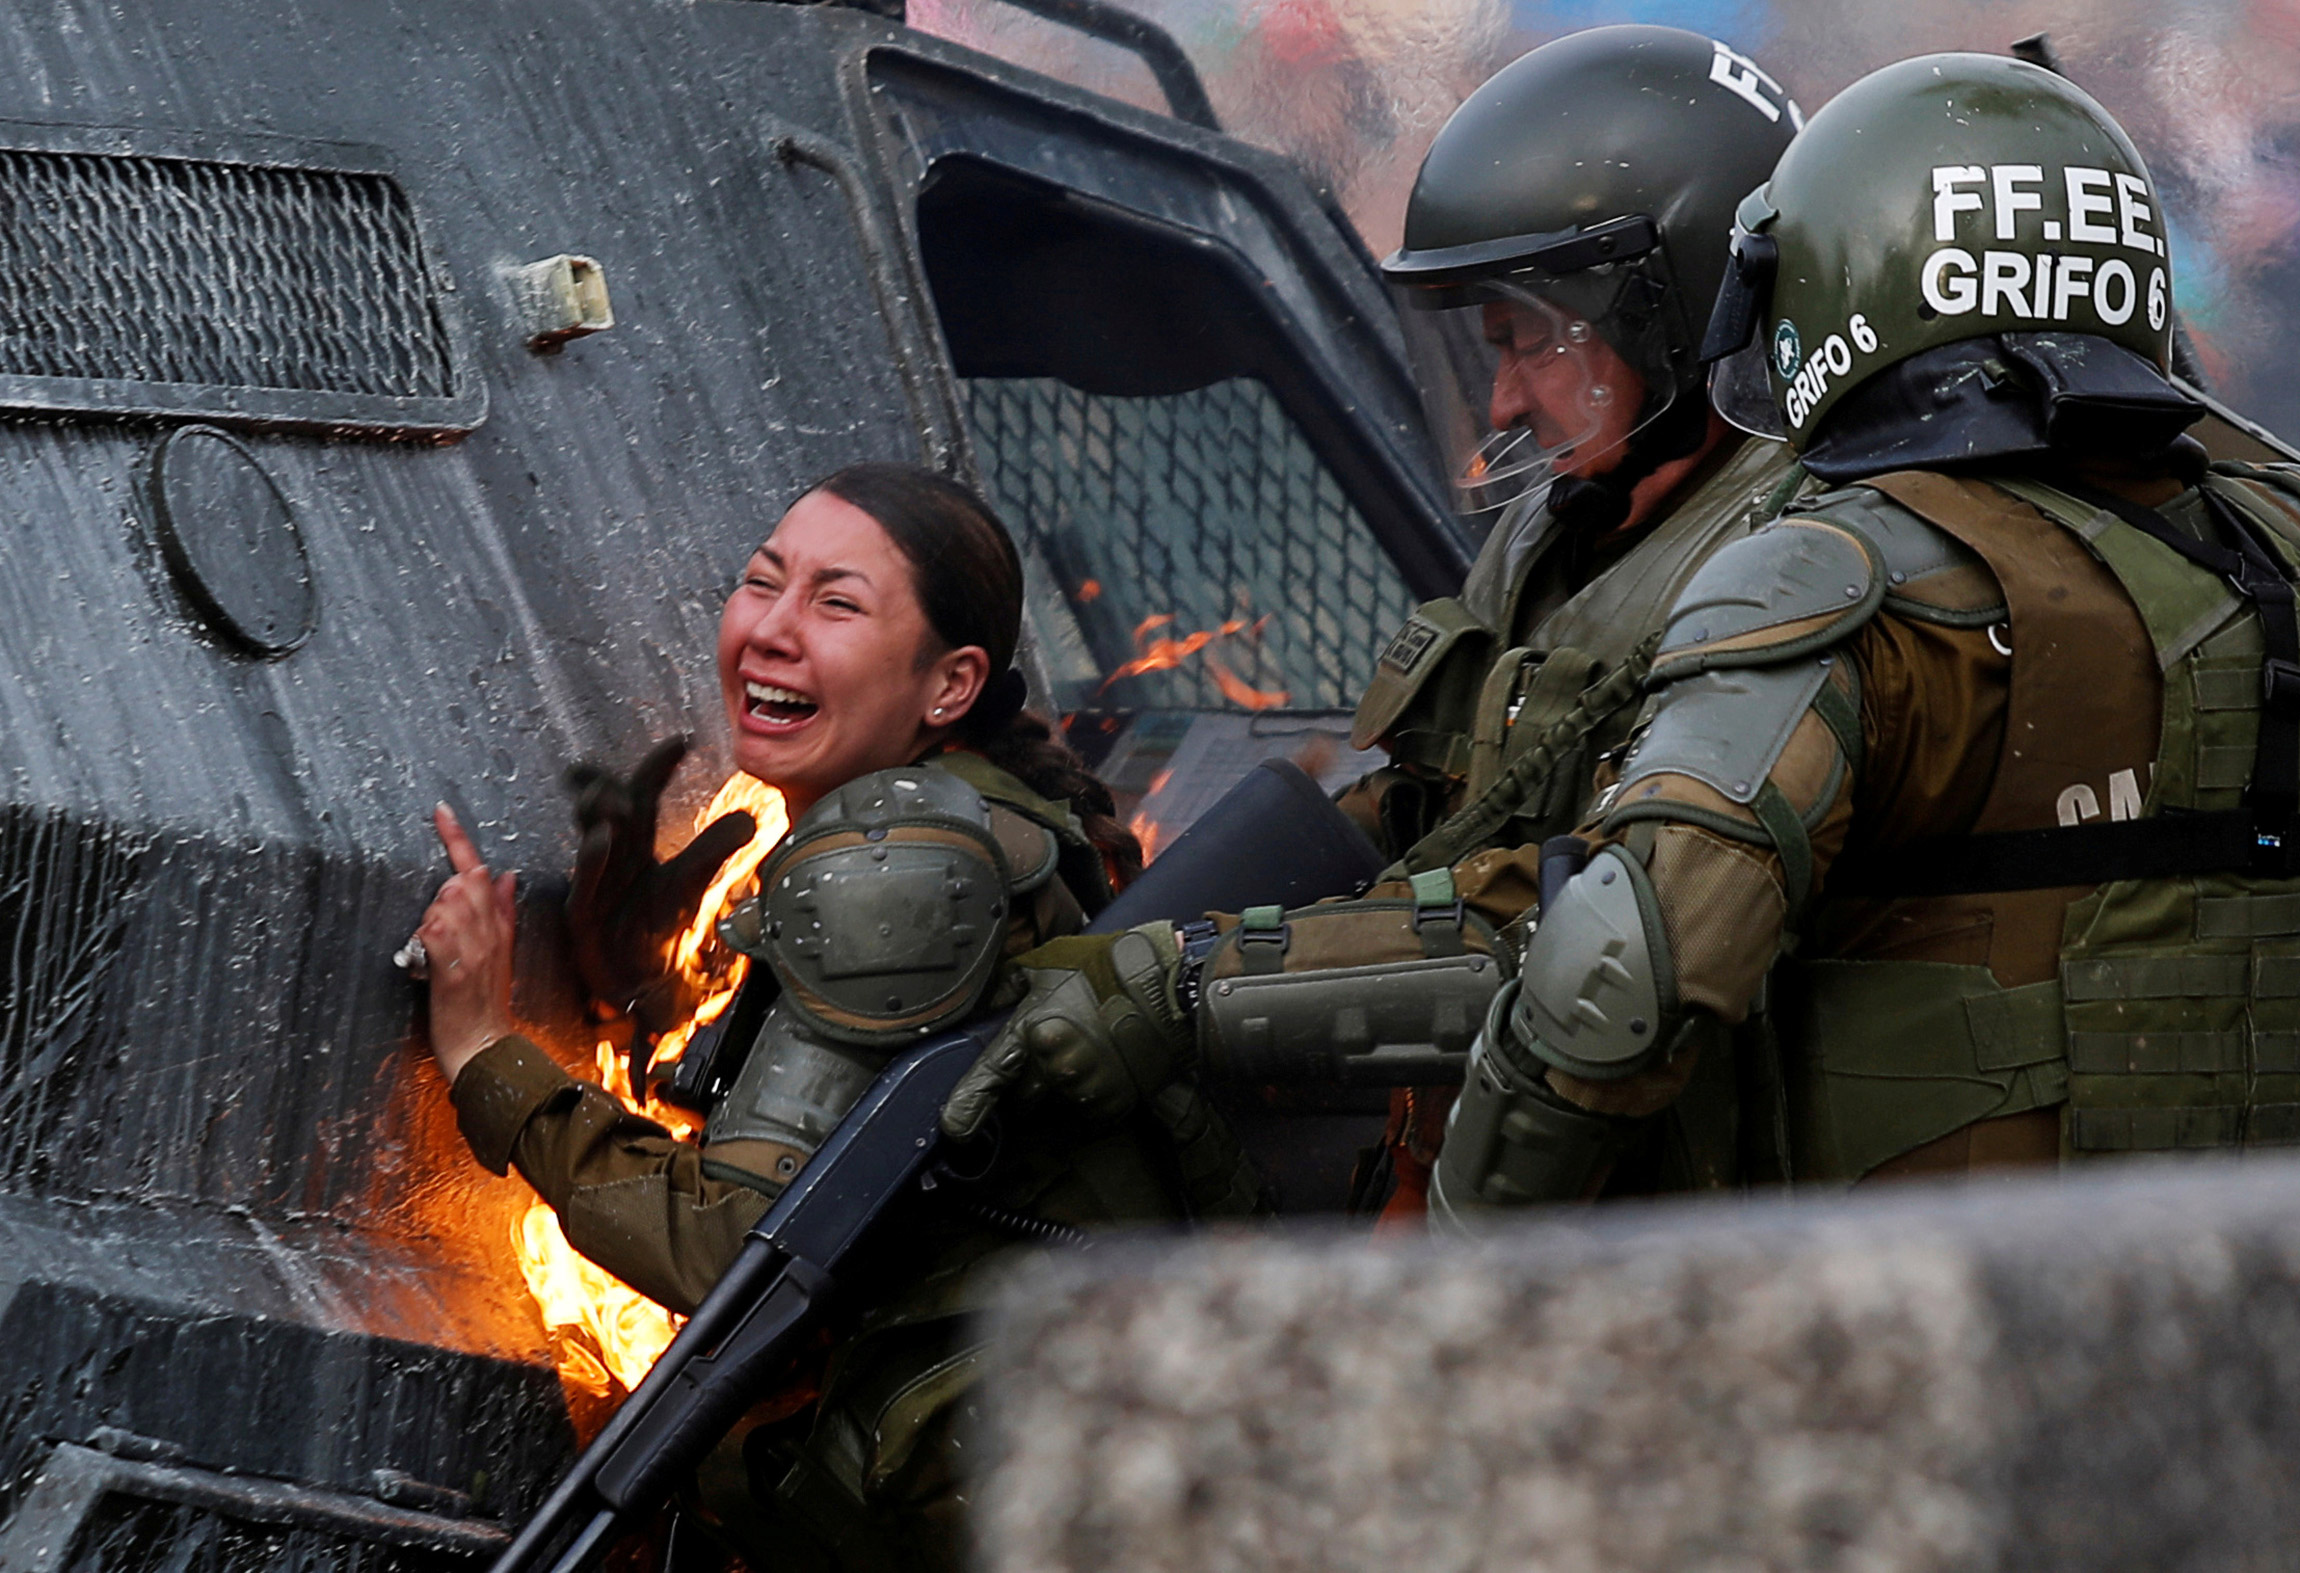 4 ноября, Сантьяго, Чили. Сотрудники спецназа во время антиправительственной акции протеста​
